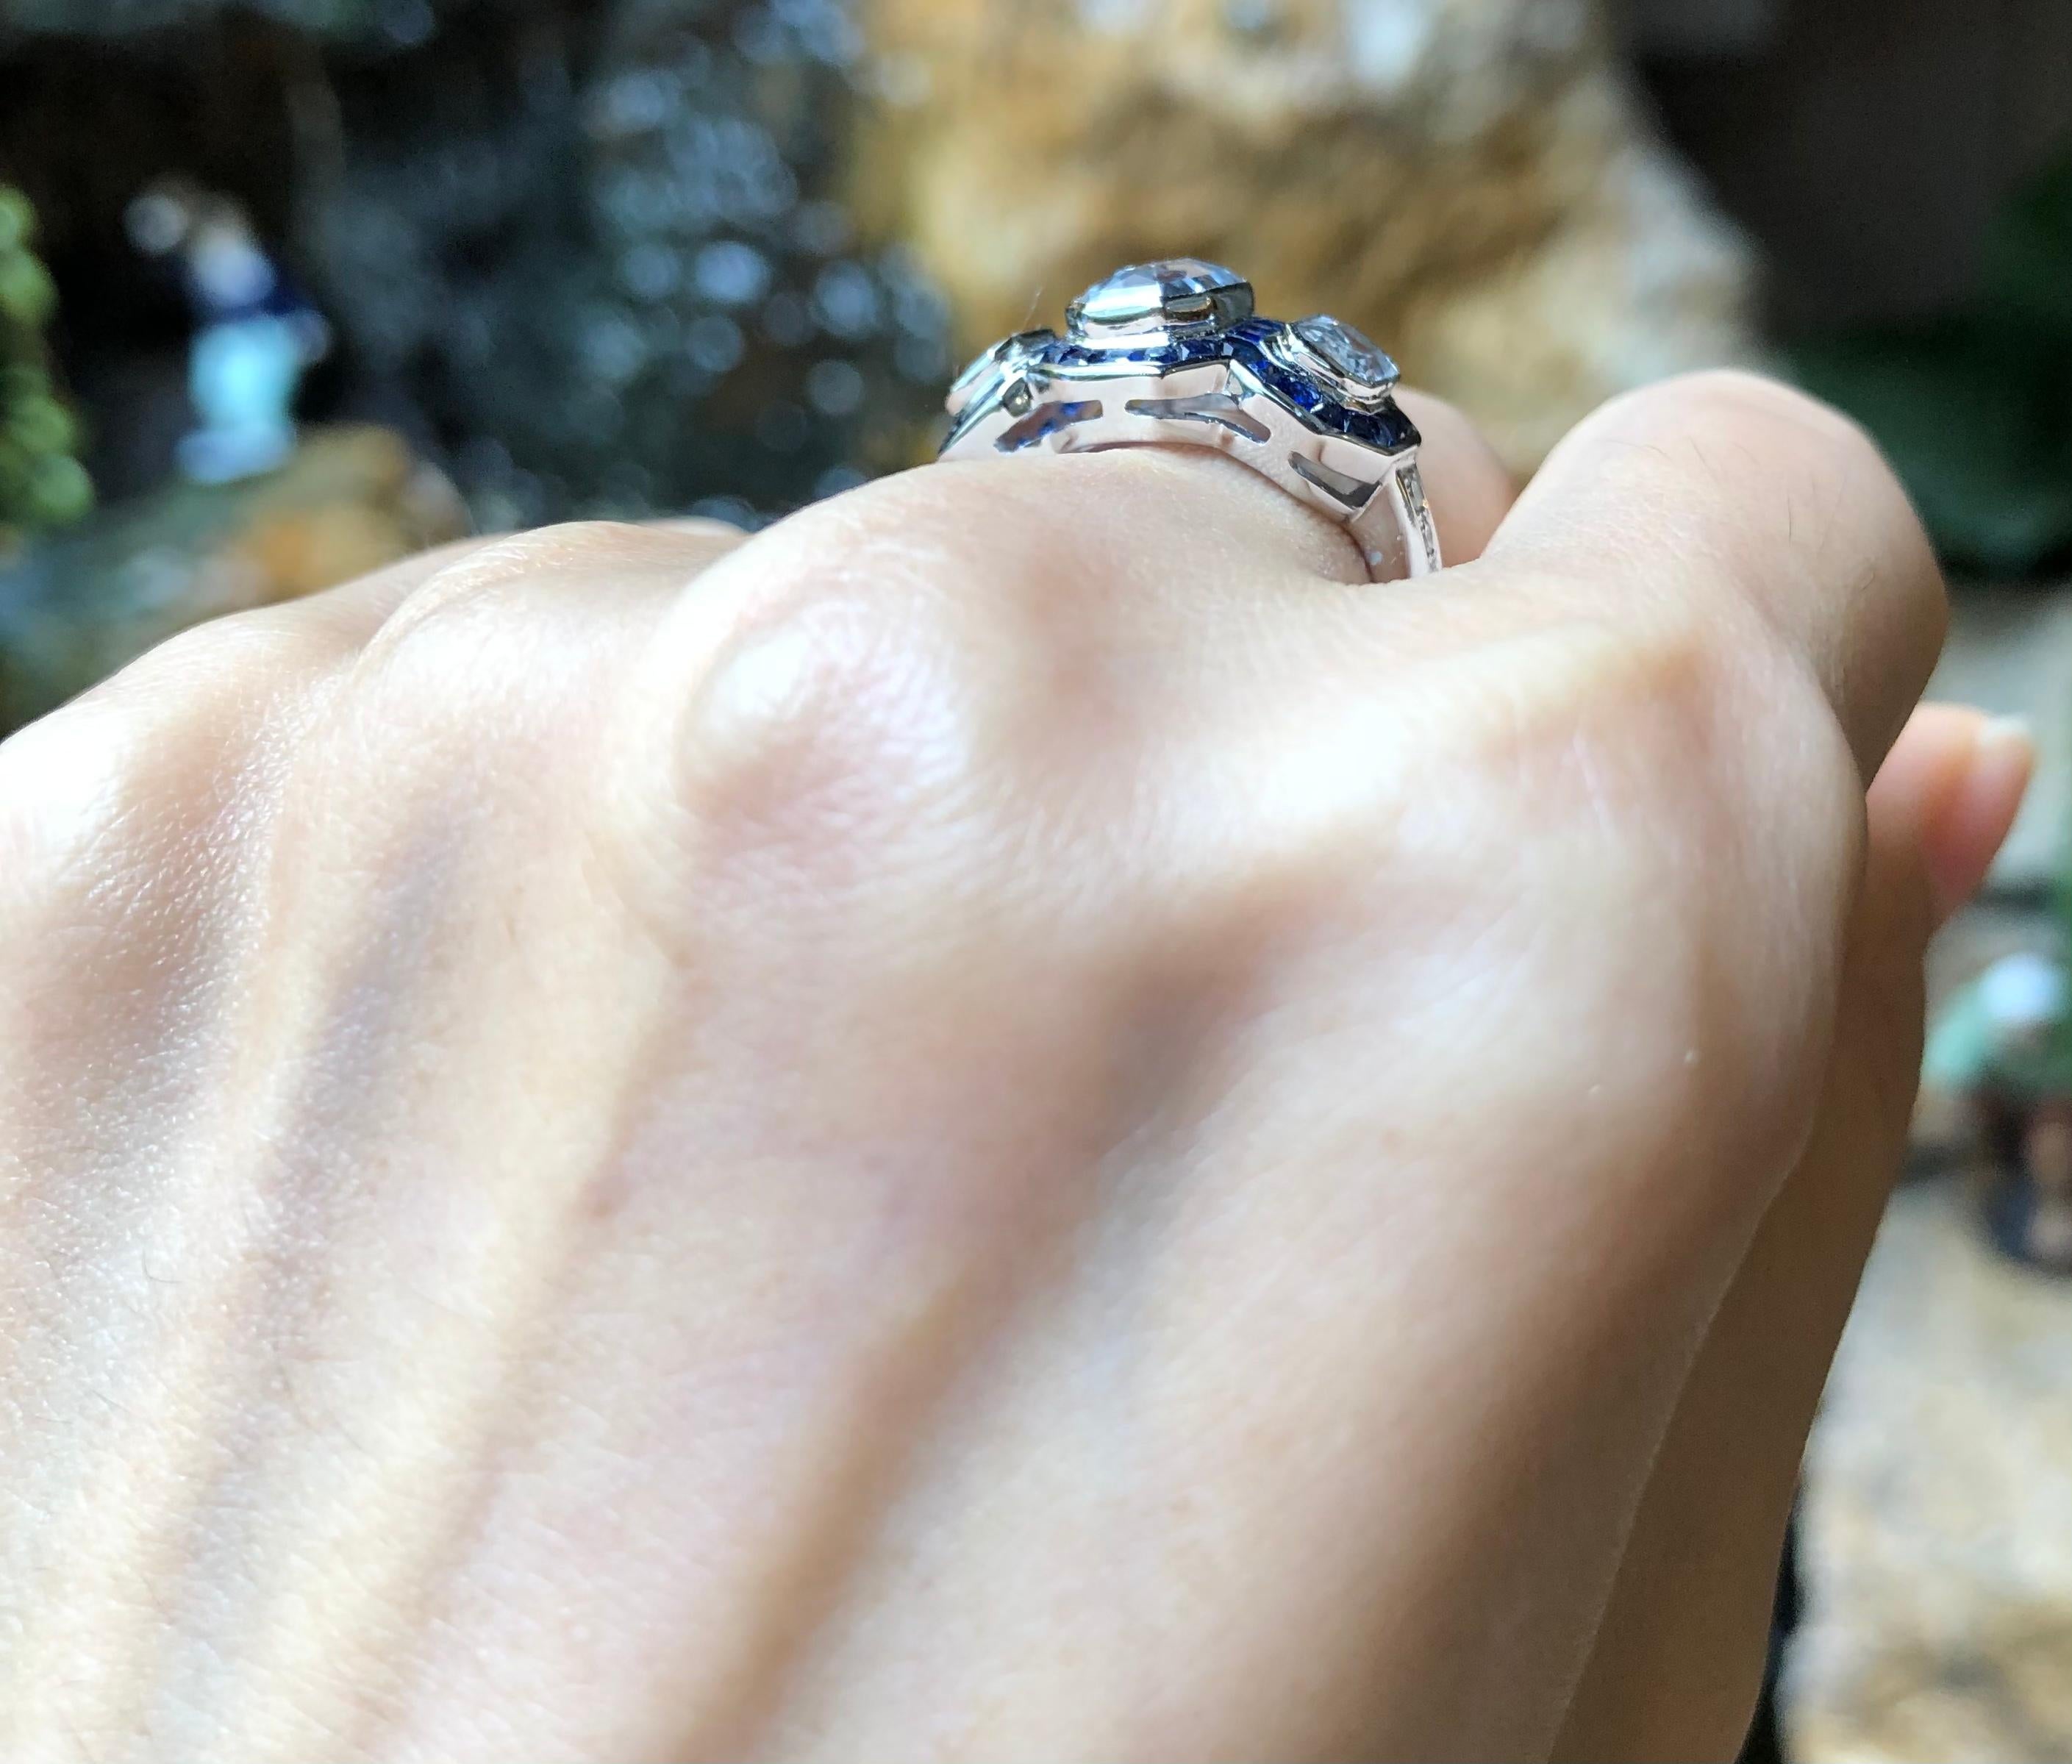 Weißer Saphir 3,66 Karat mit blauem Saphir 2,25 Karat und Diamant 0,12 Karat Ring in 18 Karat Weißgold gefasst

Breite:  2.0 cm 
Länge:  1.3 cm
Ringgröße: 53
Gesamtgewicht: 7,15 Gramm

